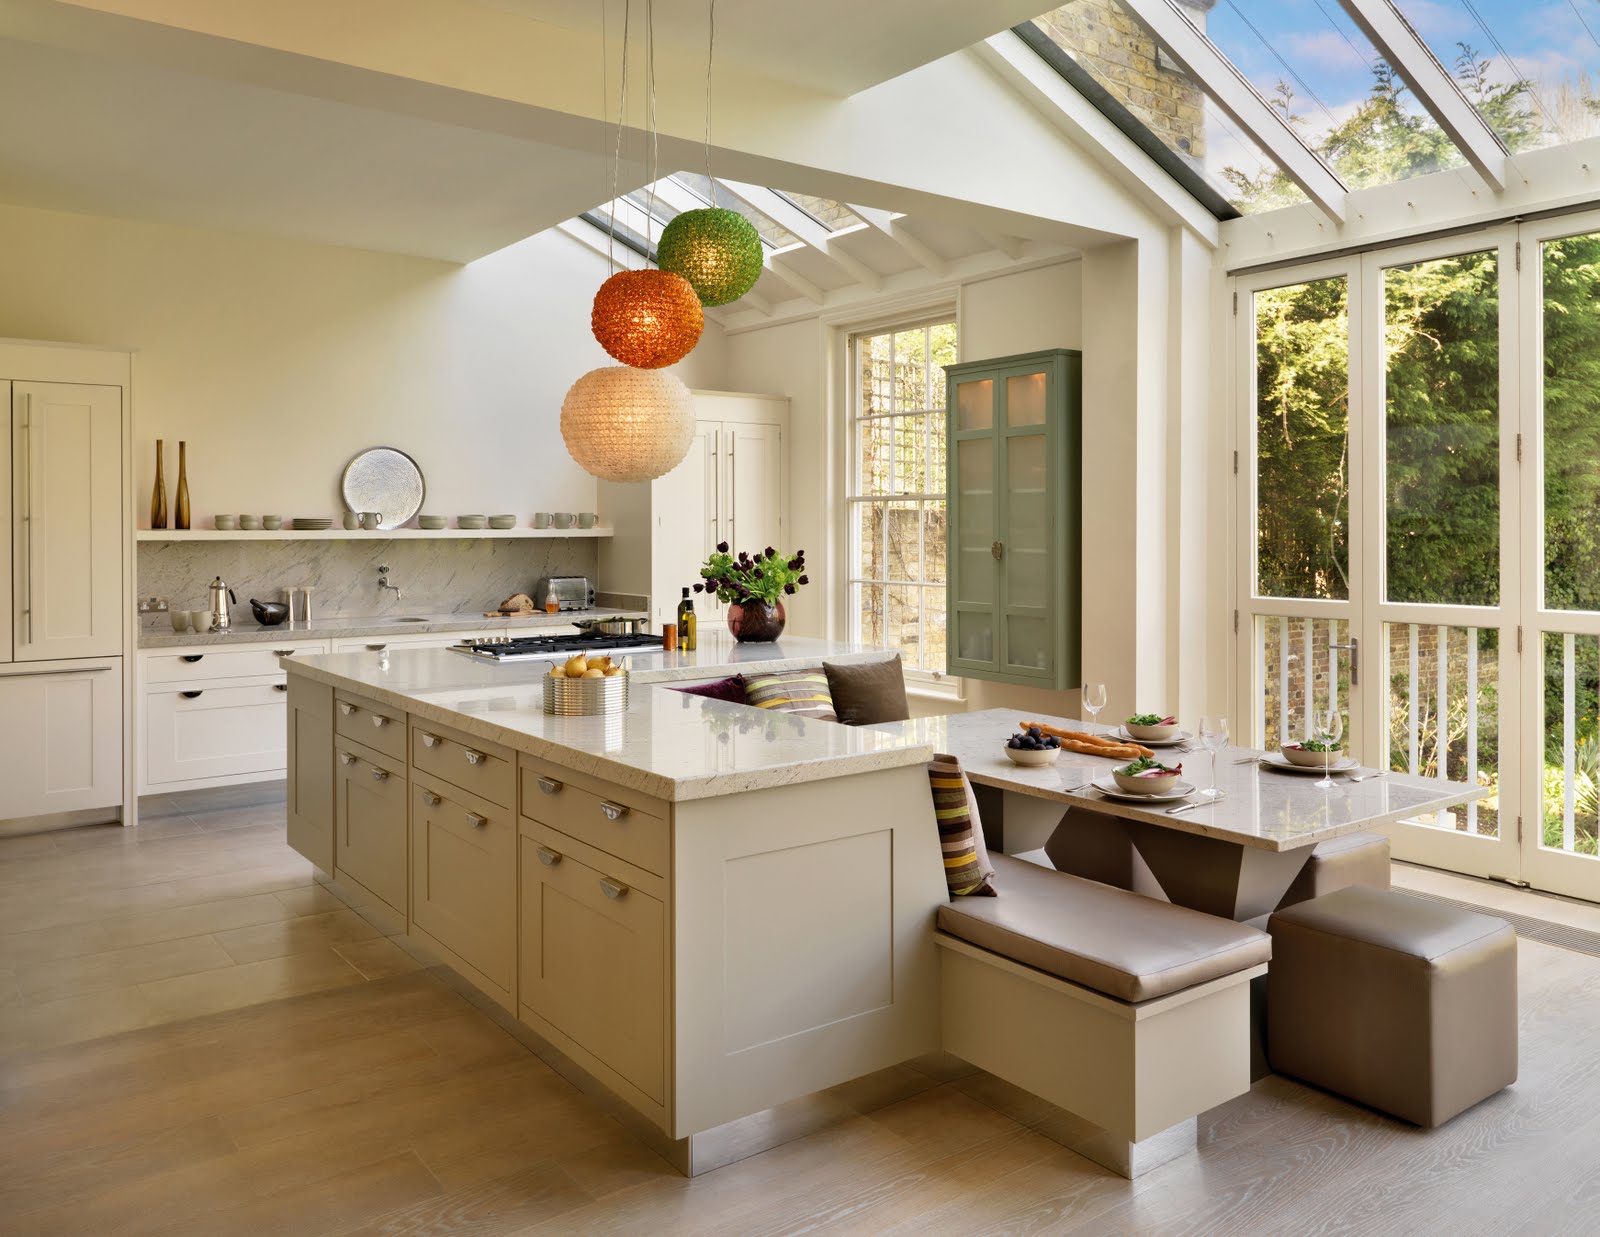 Kitchen Designs Photos With Islands - BEST HOME DESIGN IDEAS